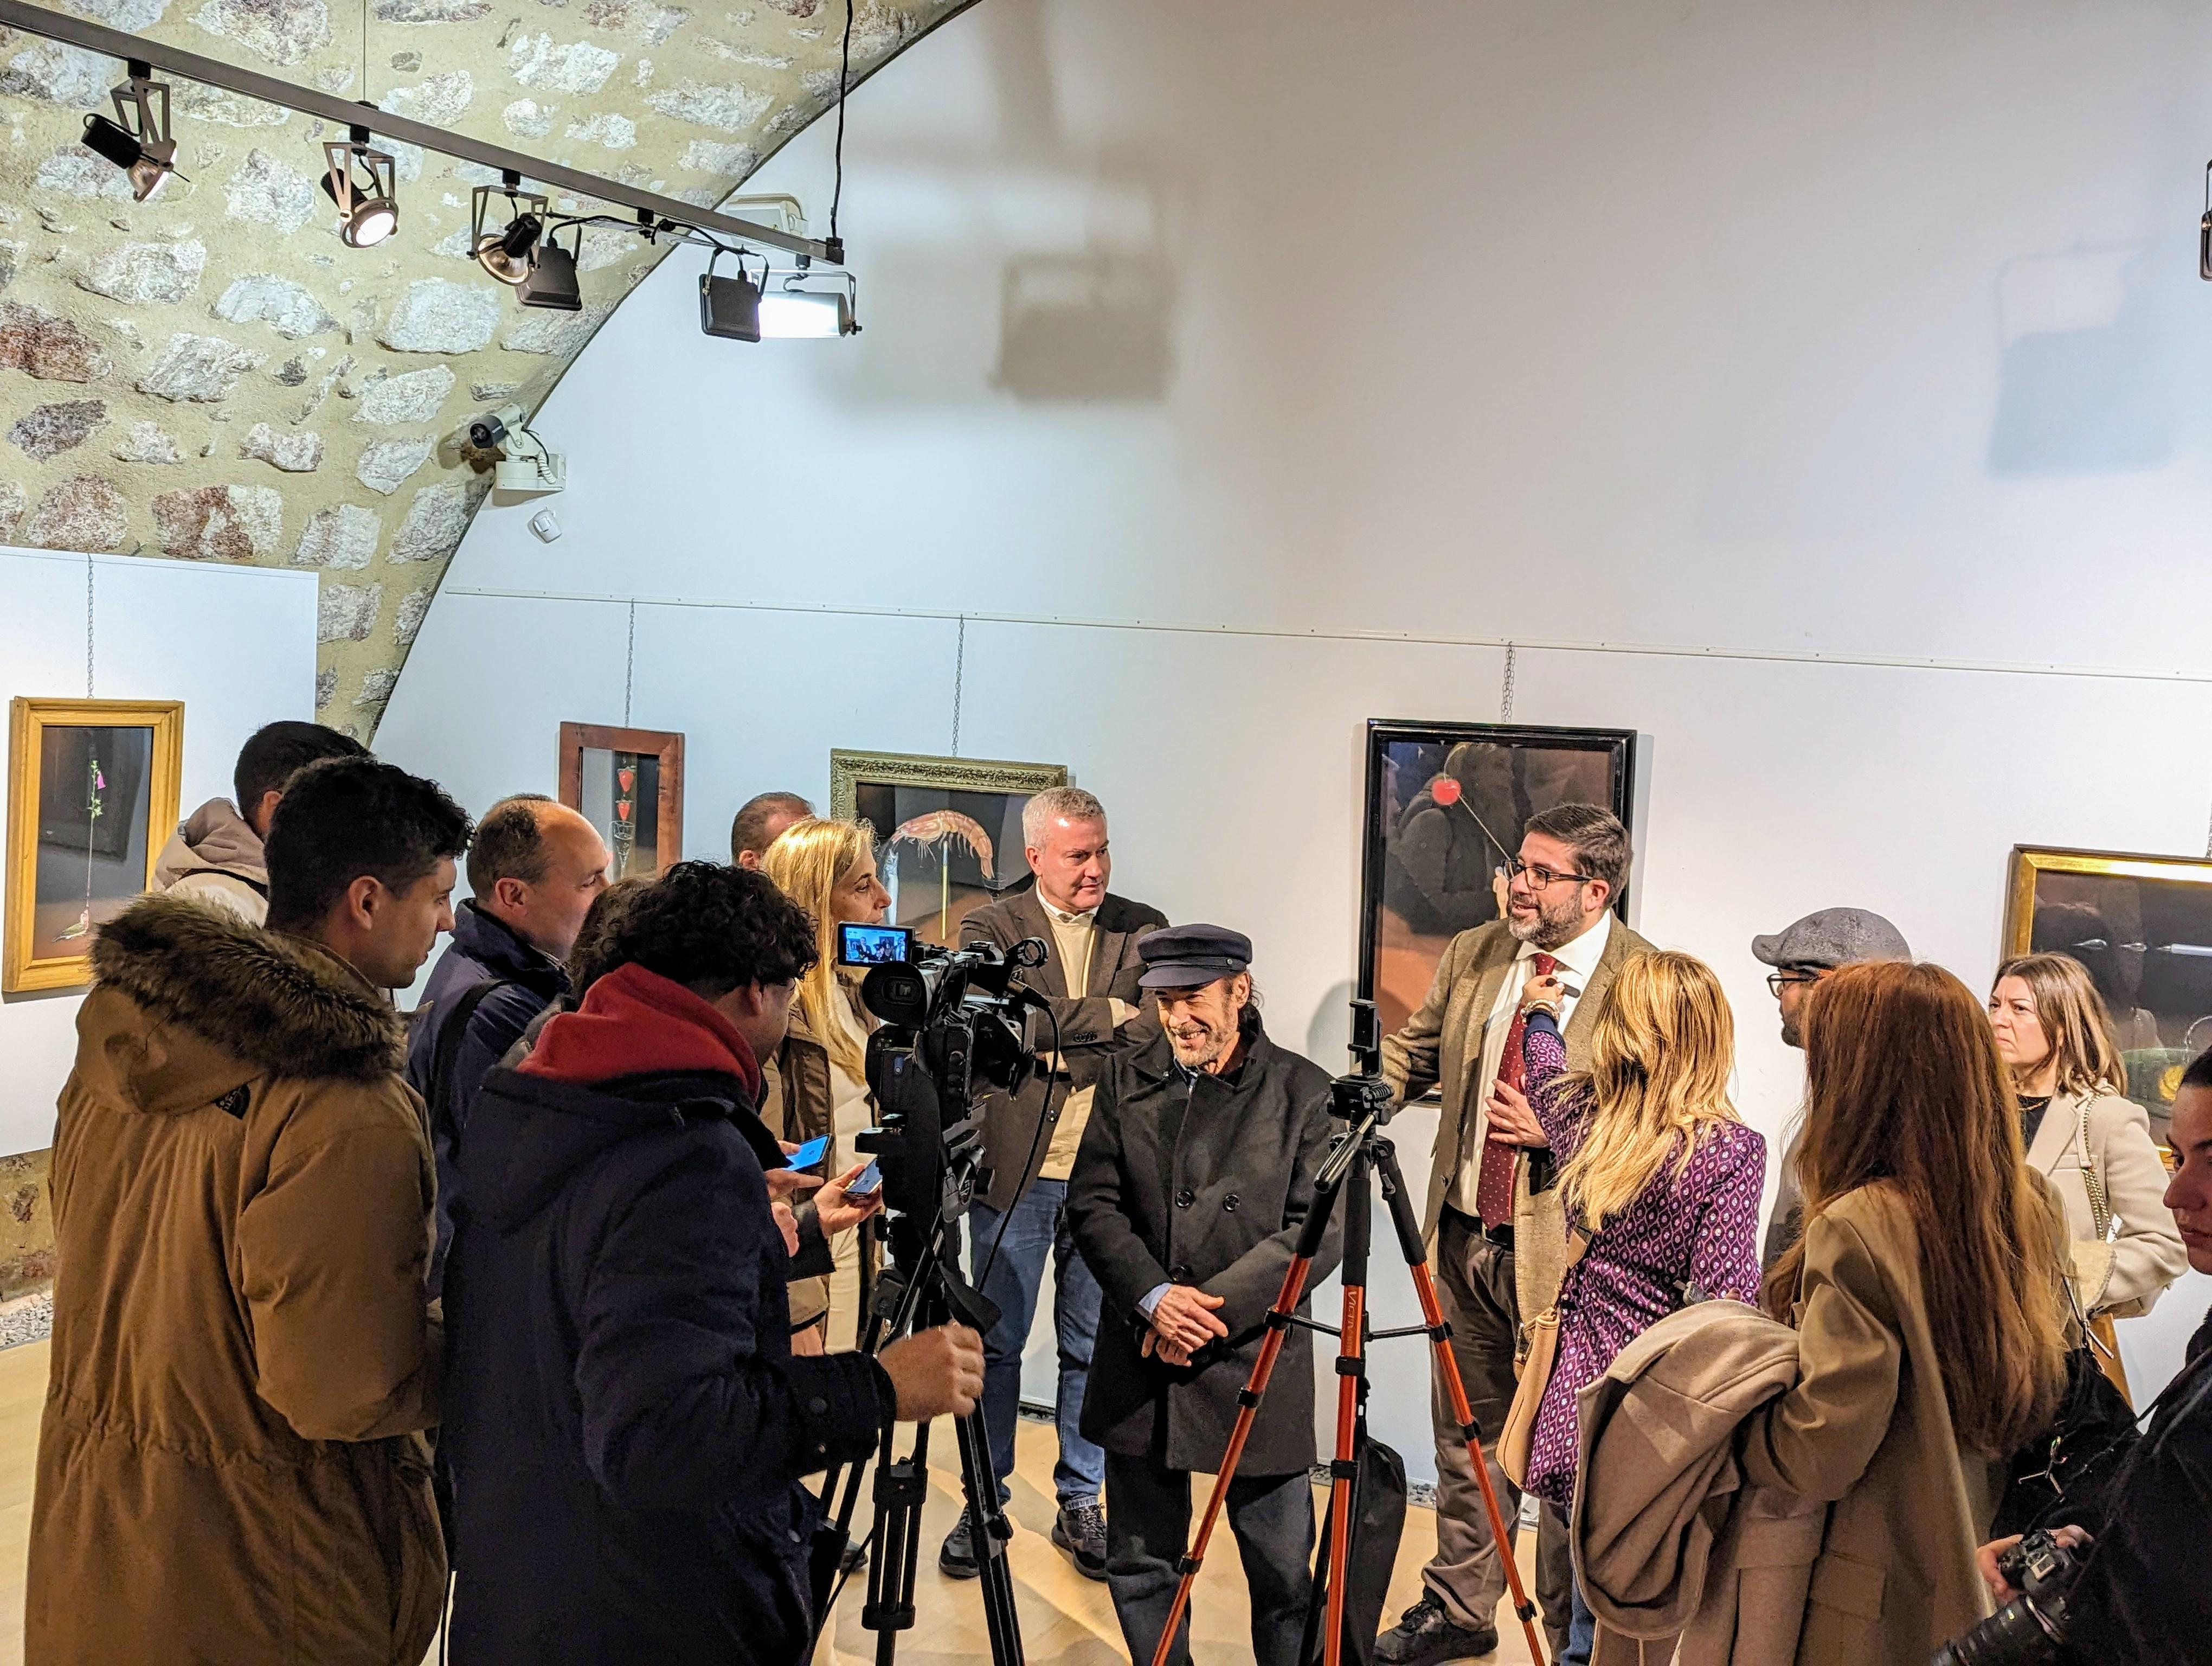 Un ano máis acompañamos en Ávila ao artista Diego De Giráldez na inauguración da súa exposición “De los primeros dibujos a la pintura actual”  